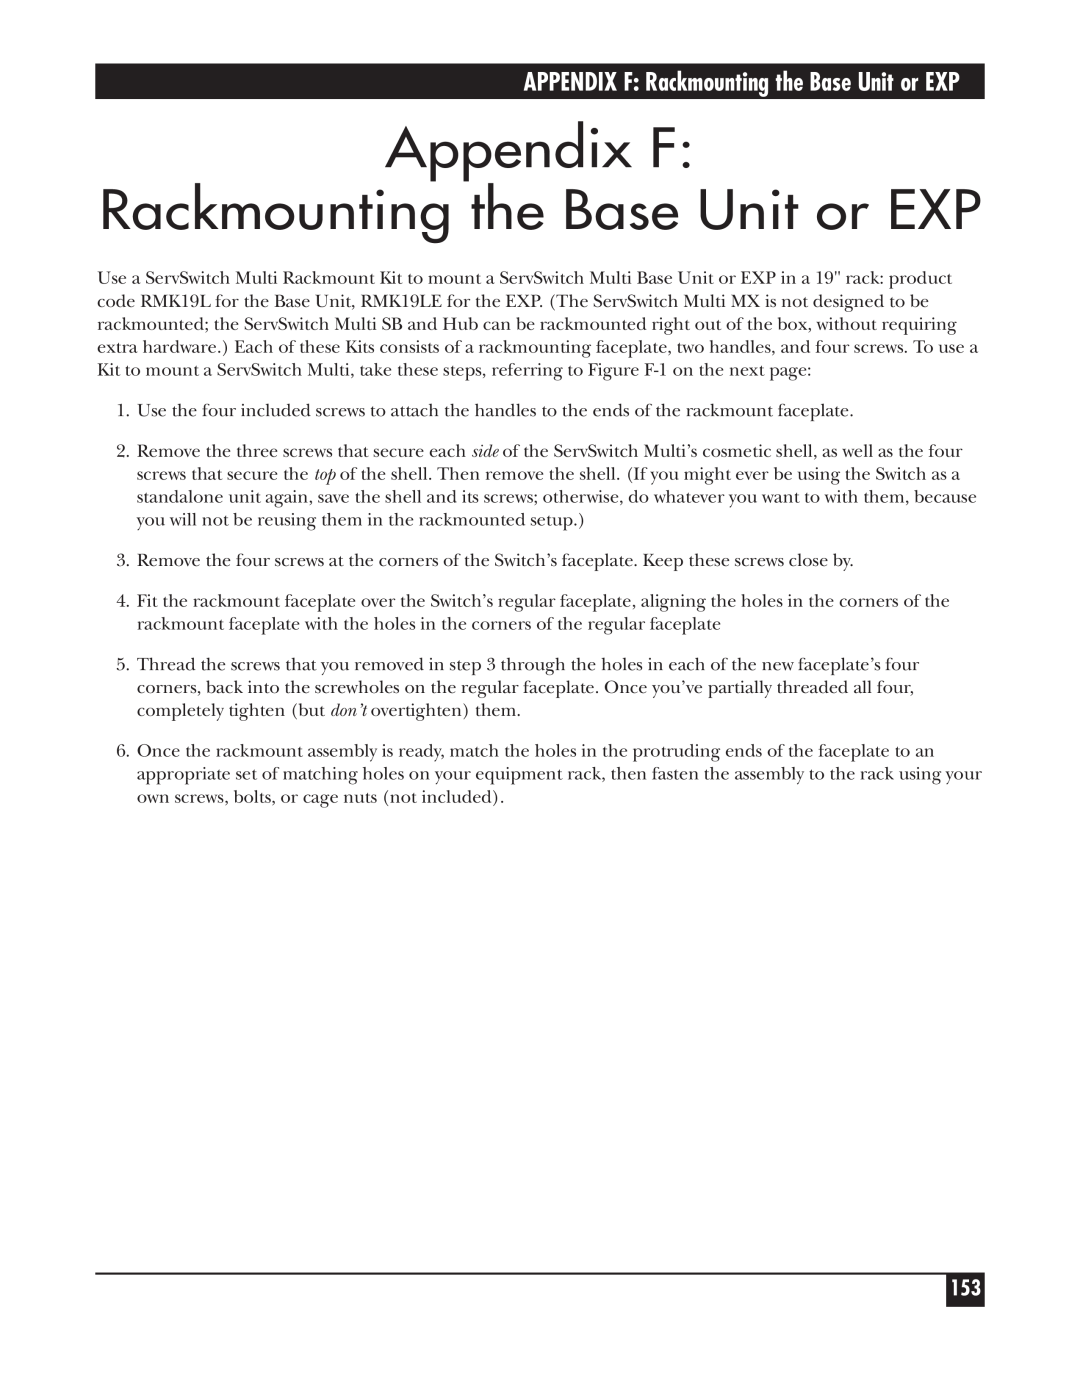 Black Box KV162A manual Appendix F Rackmounting the Base Unit or EXP, APPENDIX F Rackmounting the Base Unit or EXP 